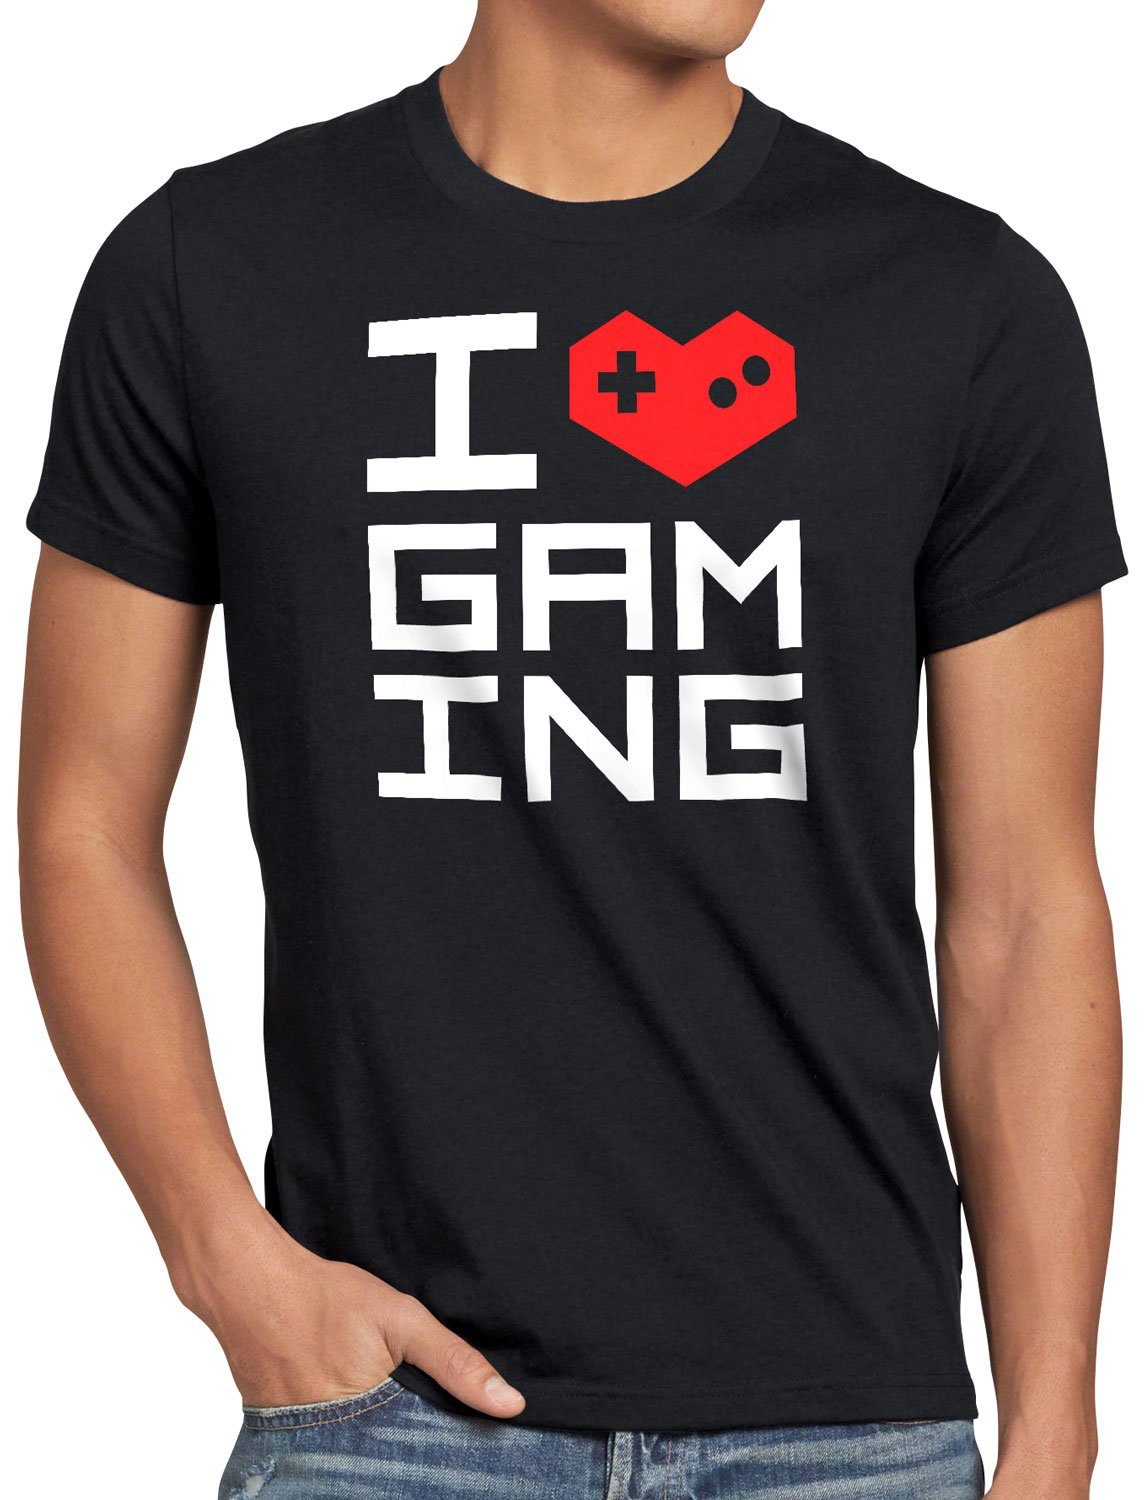 Print-Shirt lan style3 Love Herren nerd T-Shirt schwarz gamer Gaming